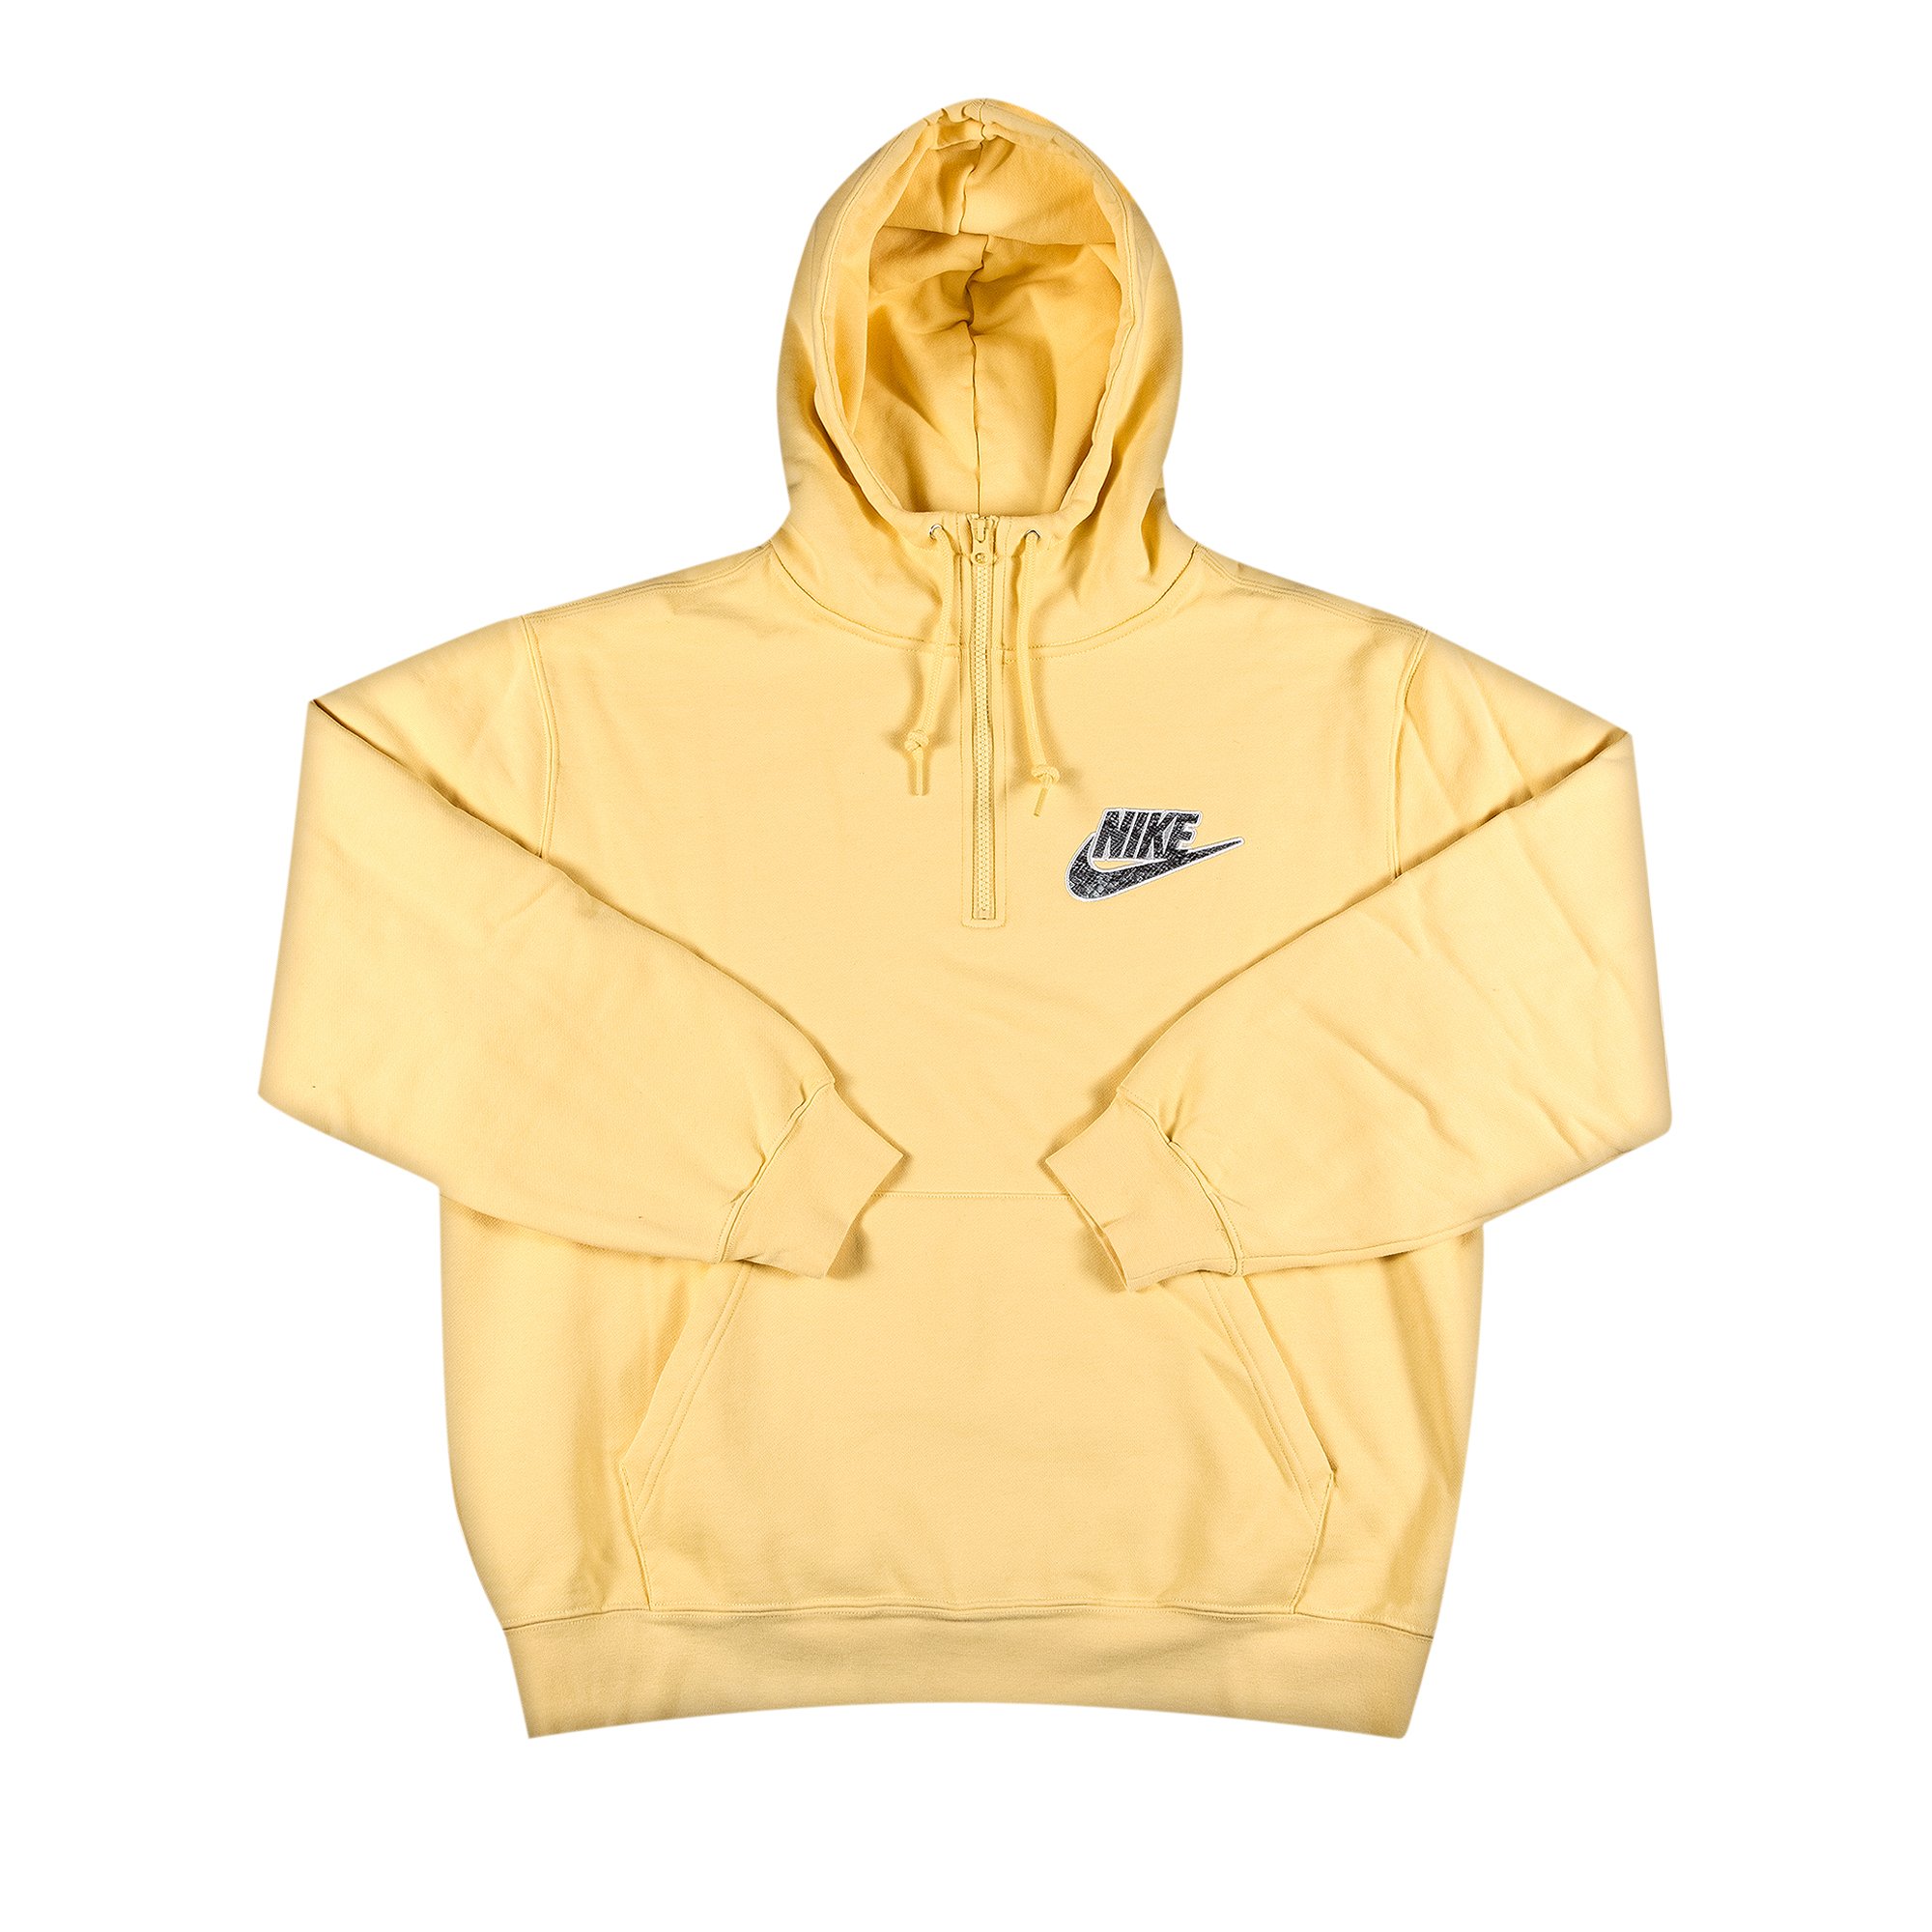 Supreme x Nike Half Zip Hooded Sweatshirt 'Pale Yellow'